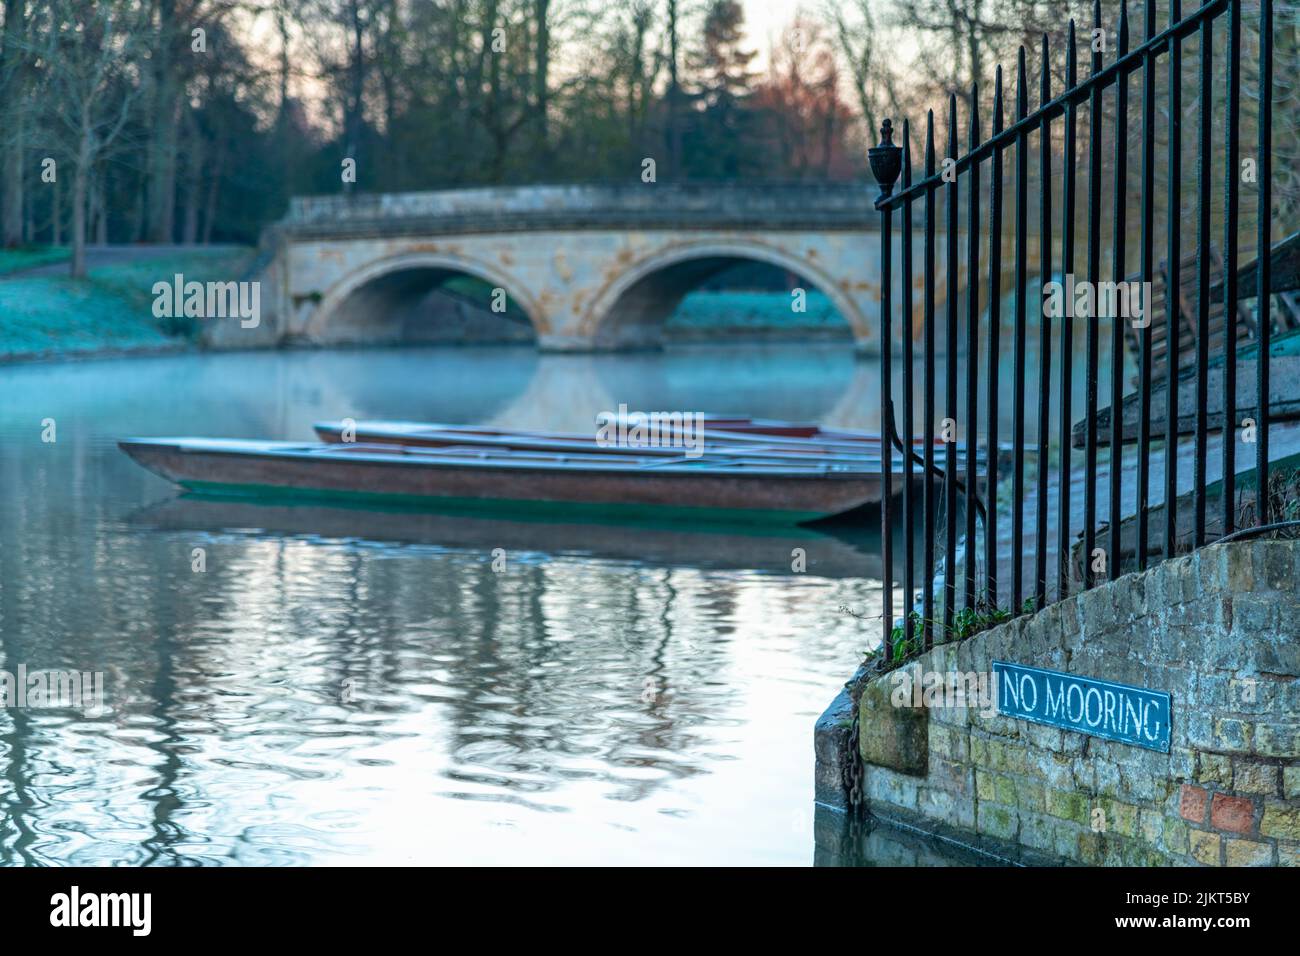 UK, England, Cambridgeshire, Cambridge, University of Cambridge, Trinity College, River Cam, Trinity Bridge Stock Photo